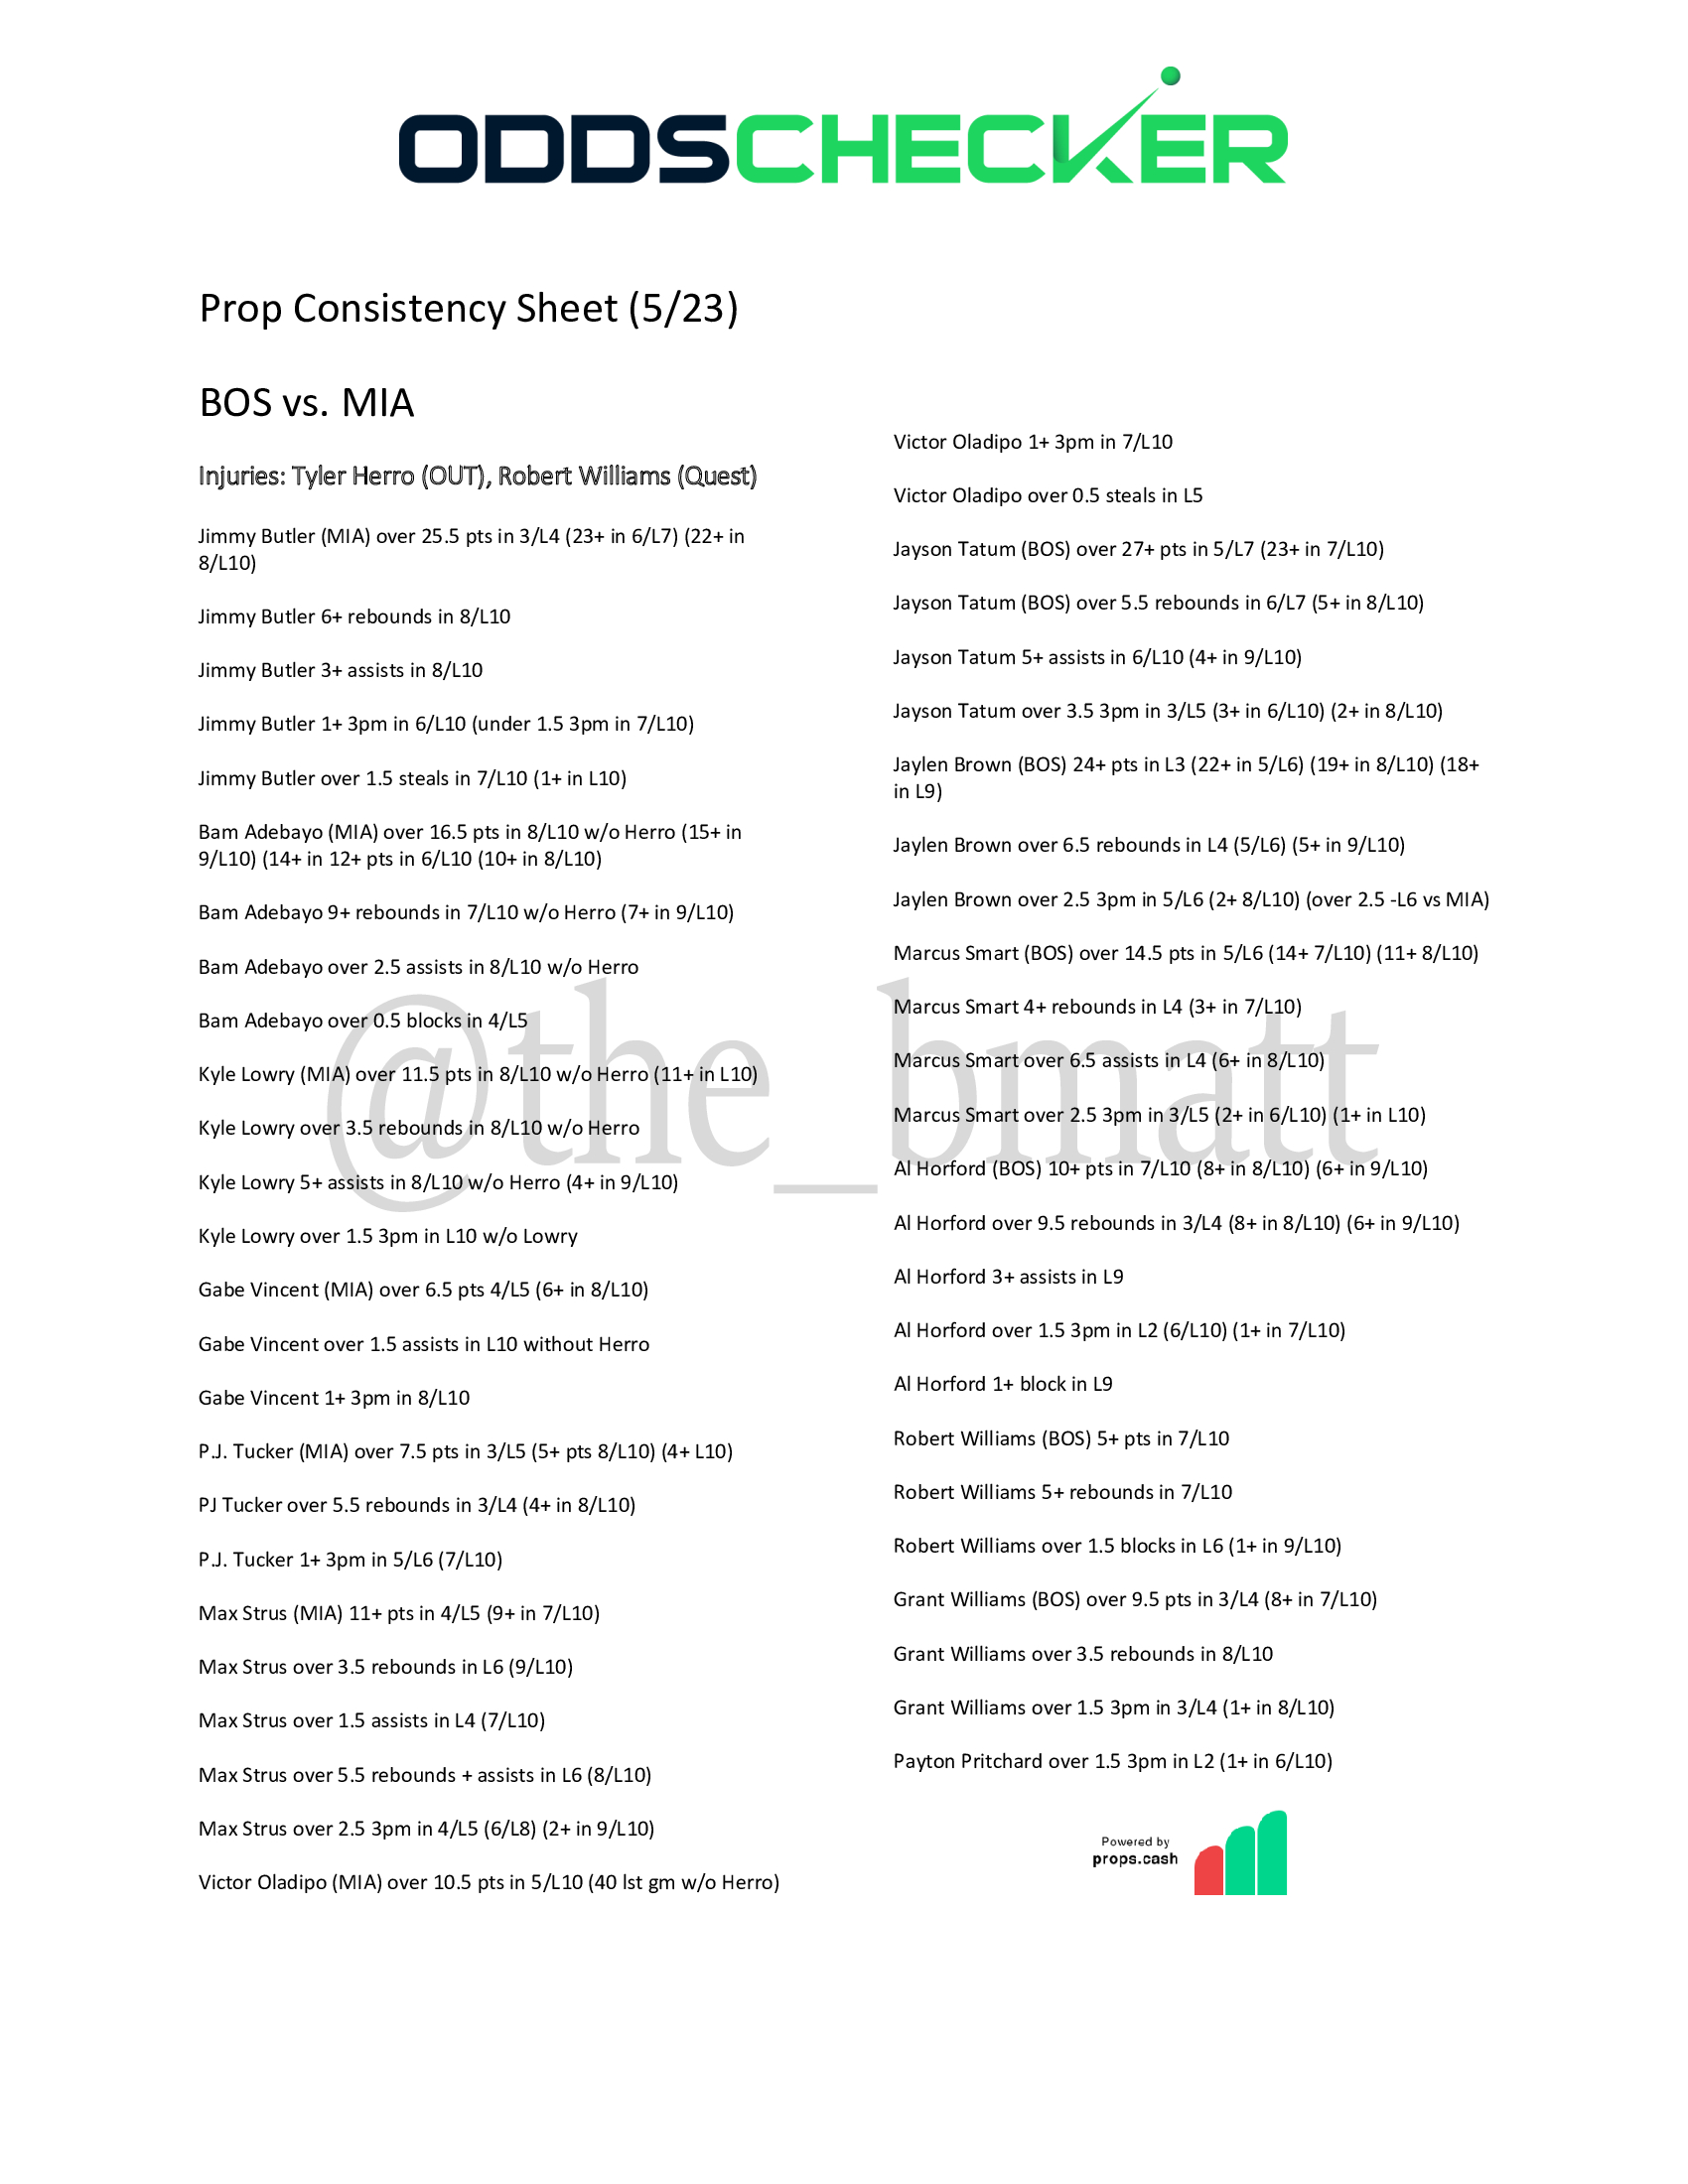 BrianMatthews Prop Consistency Sheet BOS-MIA-Game-4 